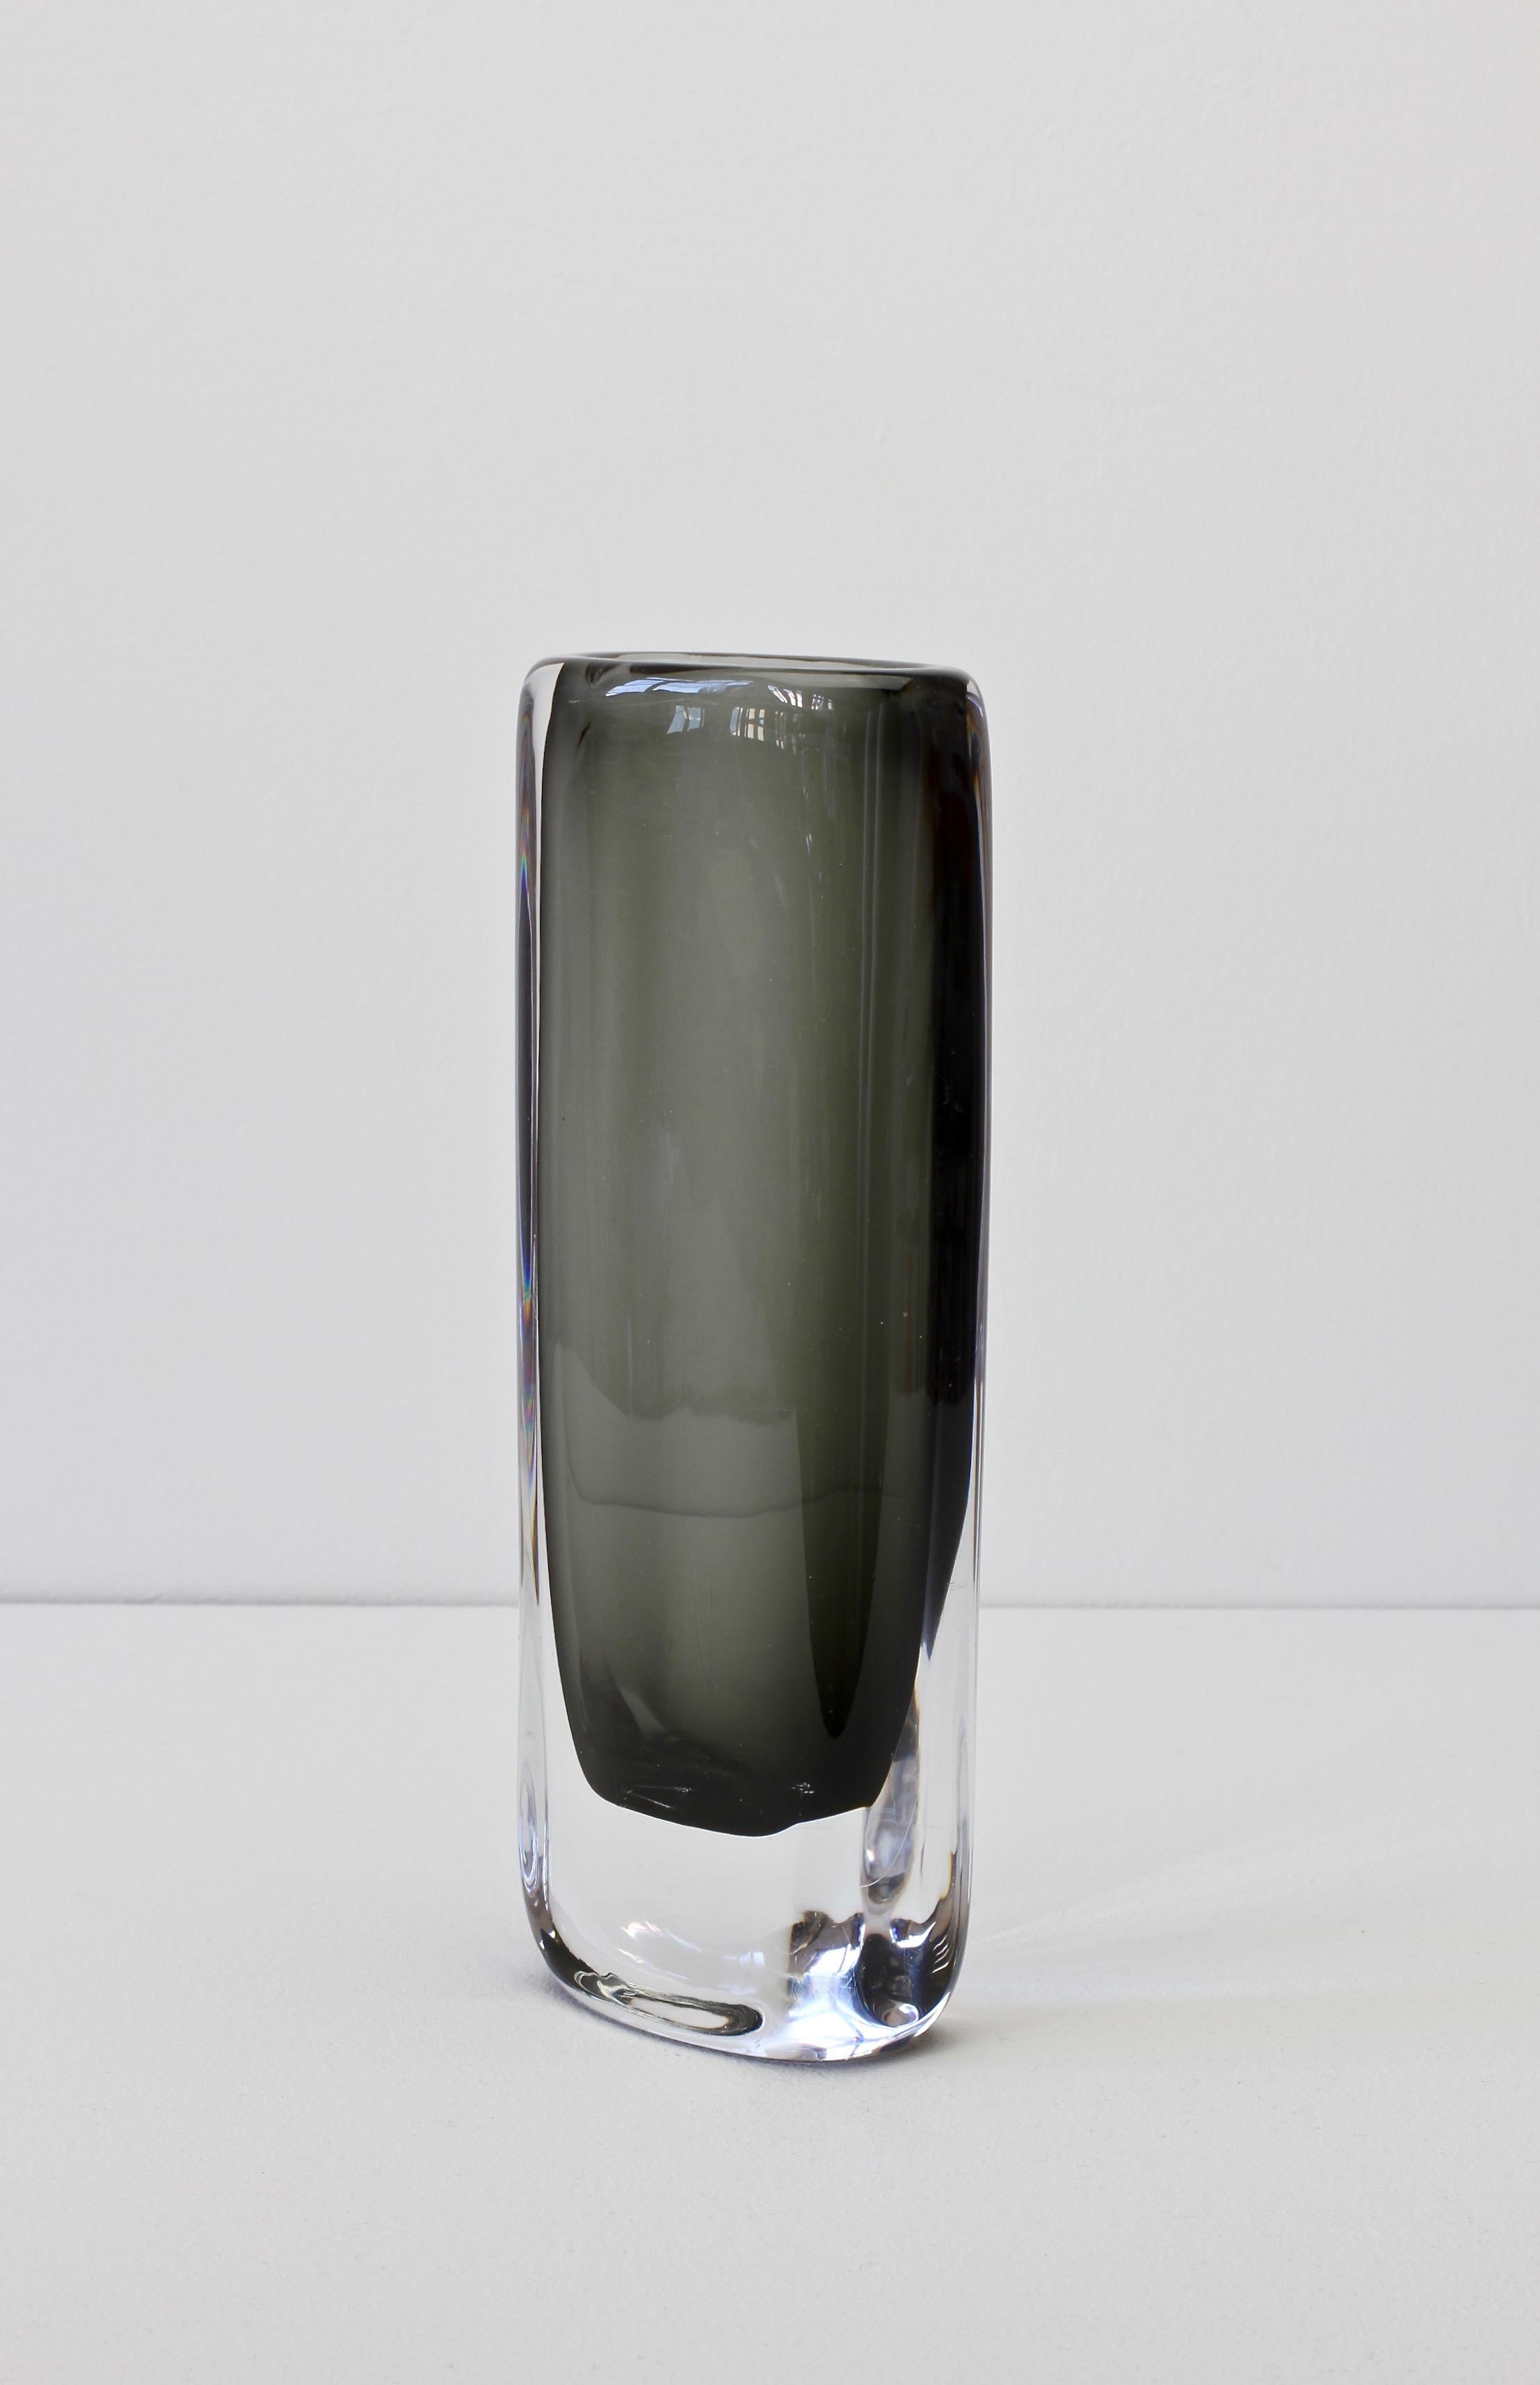 Mid-Century Modern Tall 1950s Sommerso 'Dusk' Vase Signed by Nils Landberg for Orrefors Glass